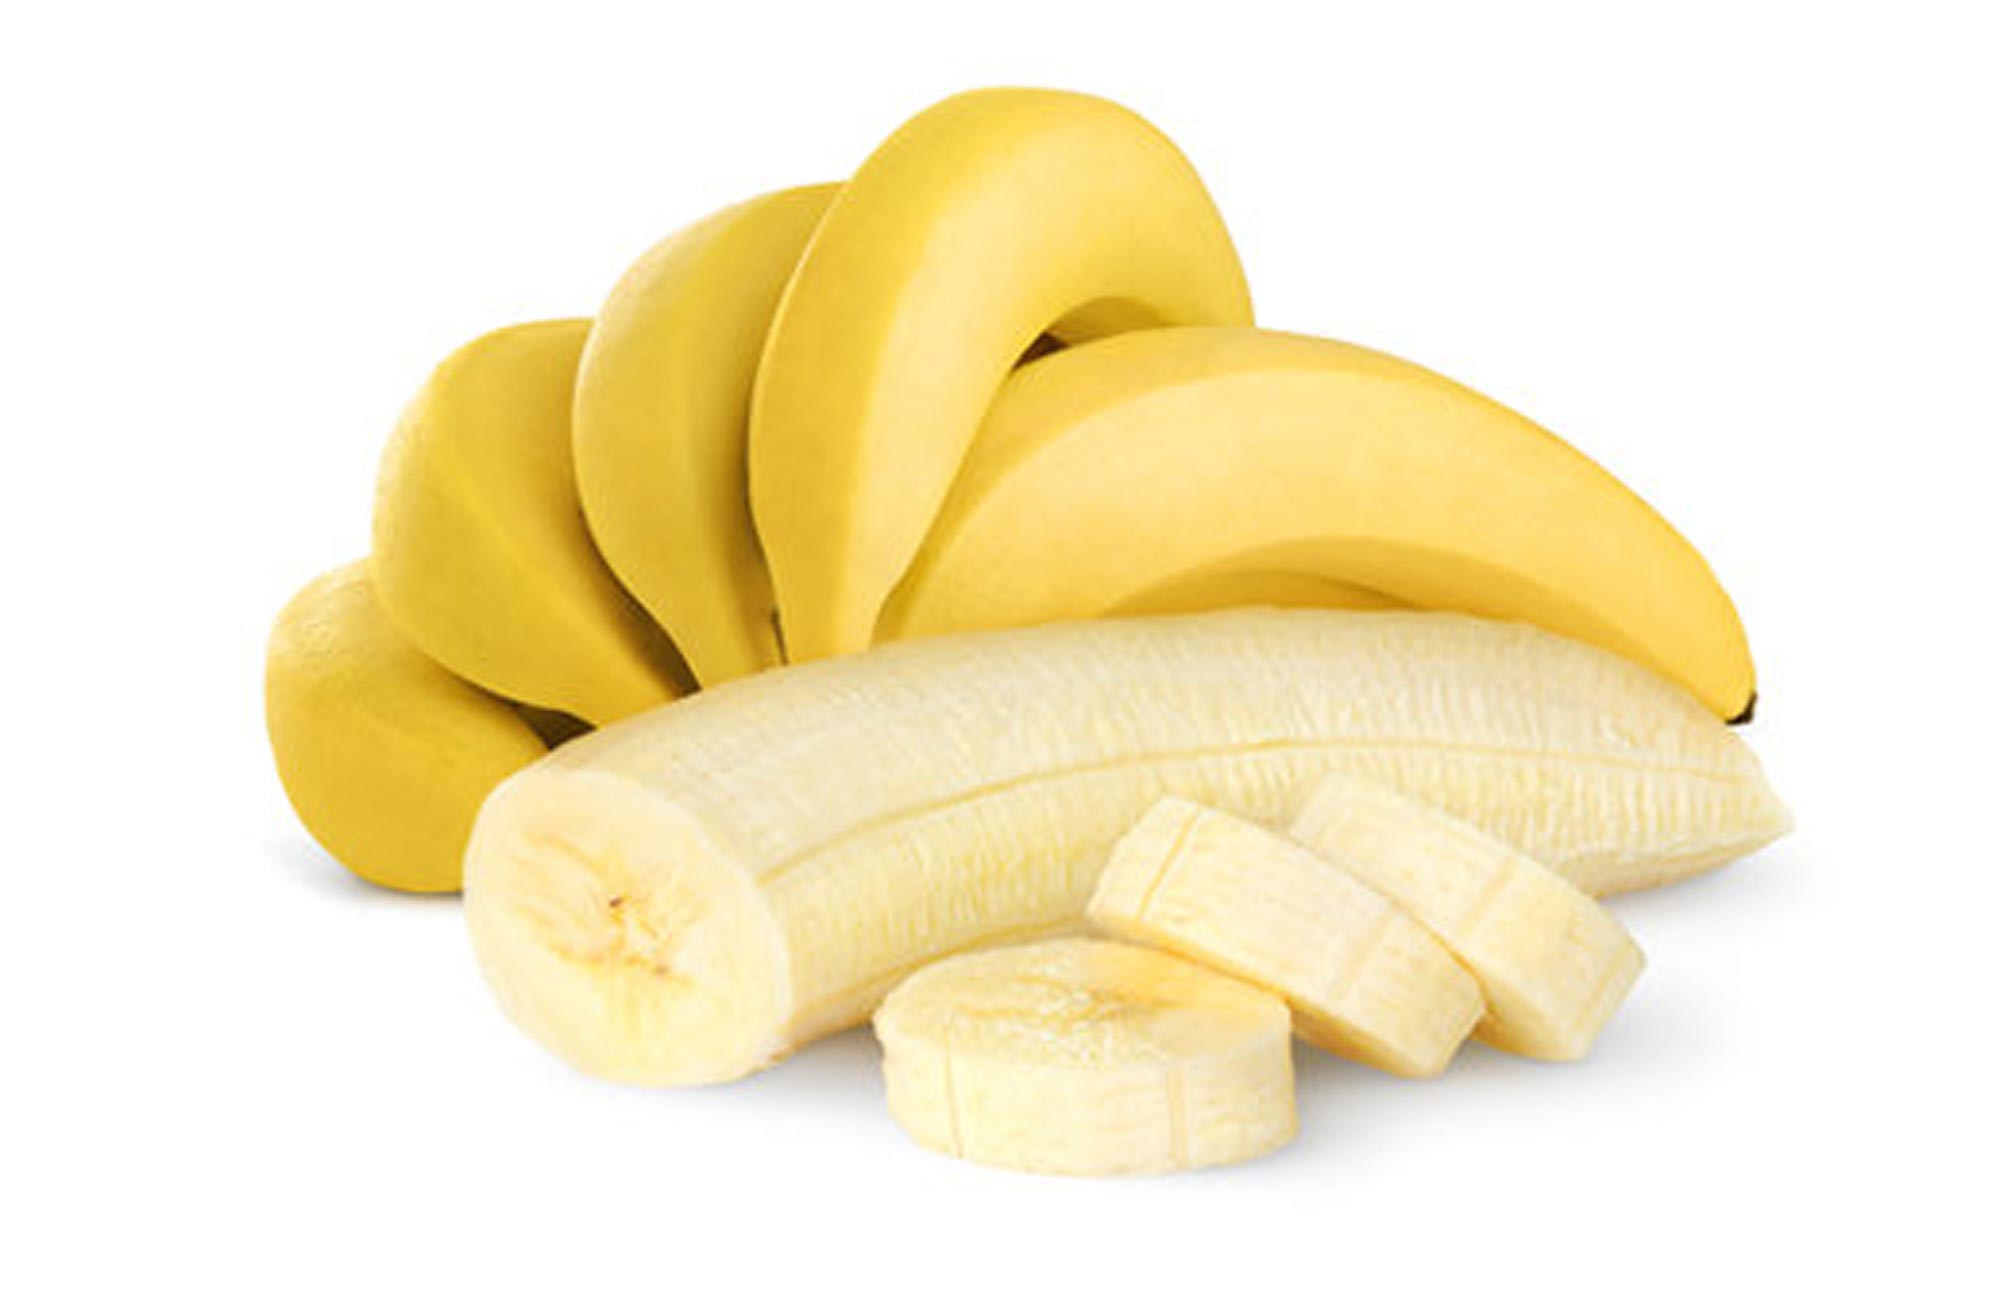 ماذا سيحدث للجسم عند تناول الموز يوميا؟